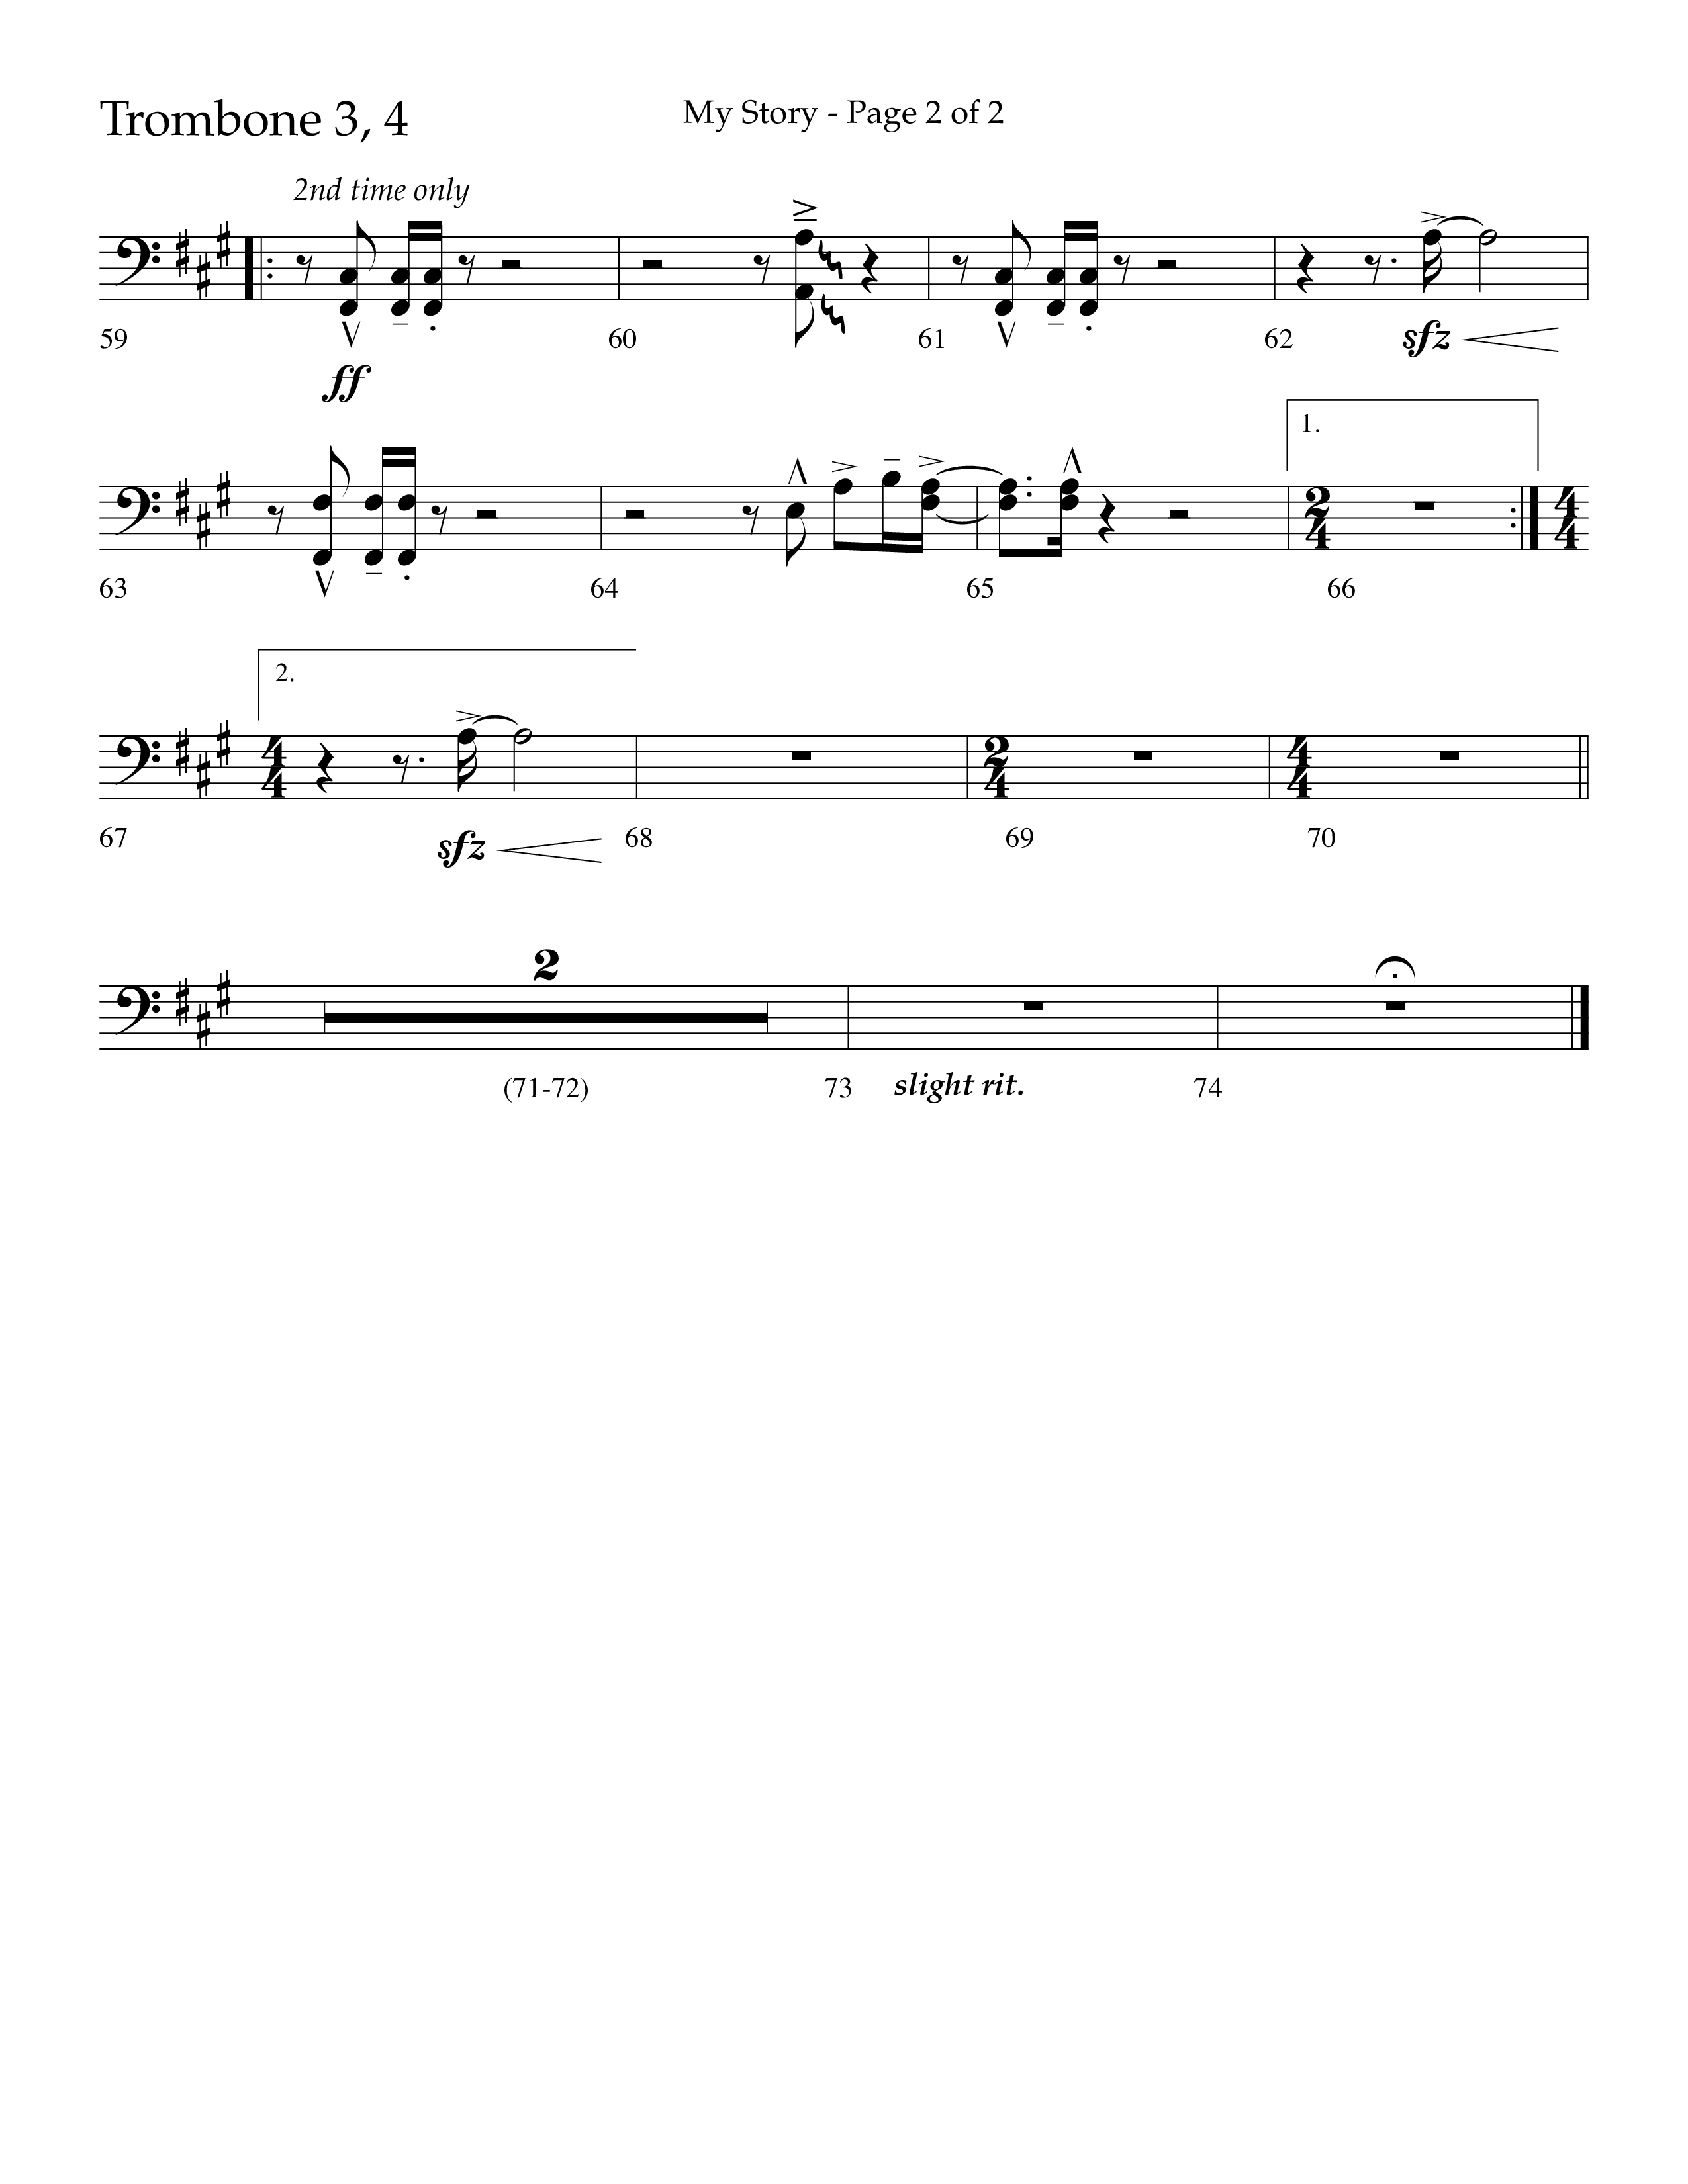 My Story (Choral Anthem SATB) Trombone 3/4 (Lifeway Choral / Arr. Craig Adams)